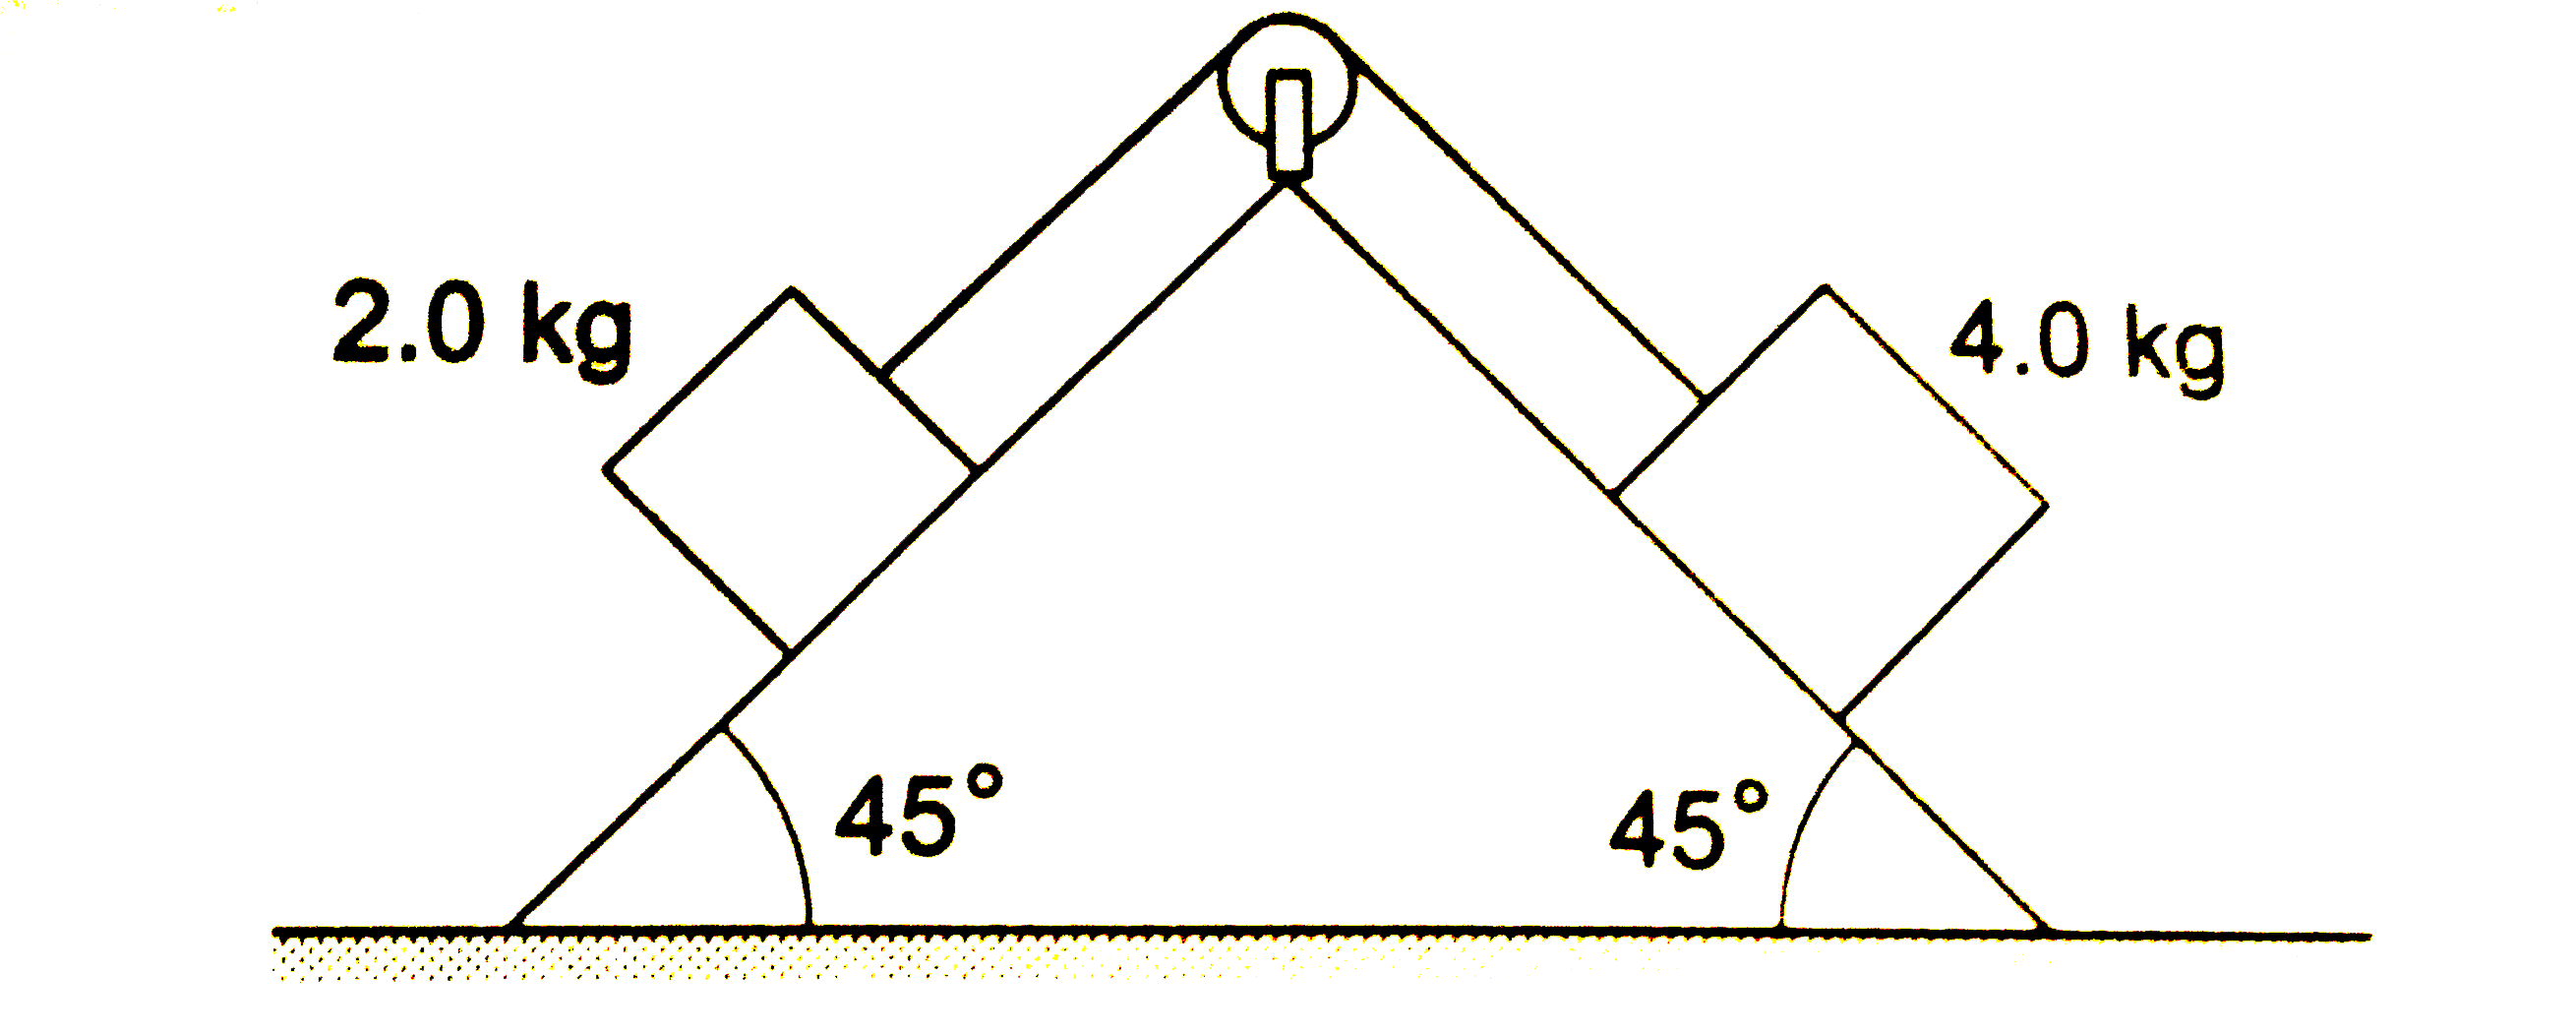 चित्र 18.E7 में प्रदर्शित घिरनी की त्रिज्या 10 cm तथा अपने अक्ष के प्रति जड़त्व आघूर्ण 0.5 kg m^2 है। दोनों नत तल घर्षणरहित हैं। 4.0 kg द्रव्यमान वाल गुटक के त्वरण की गणना करें